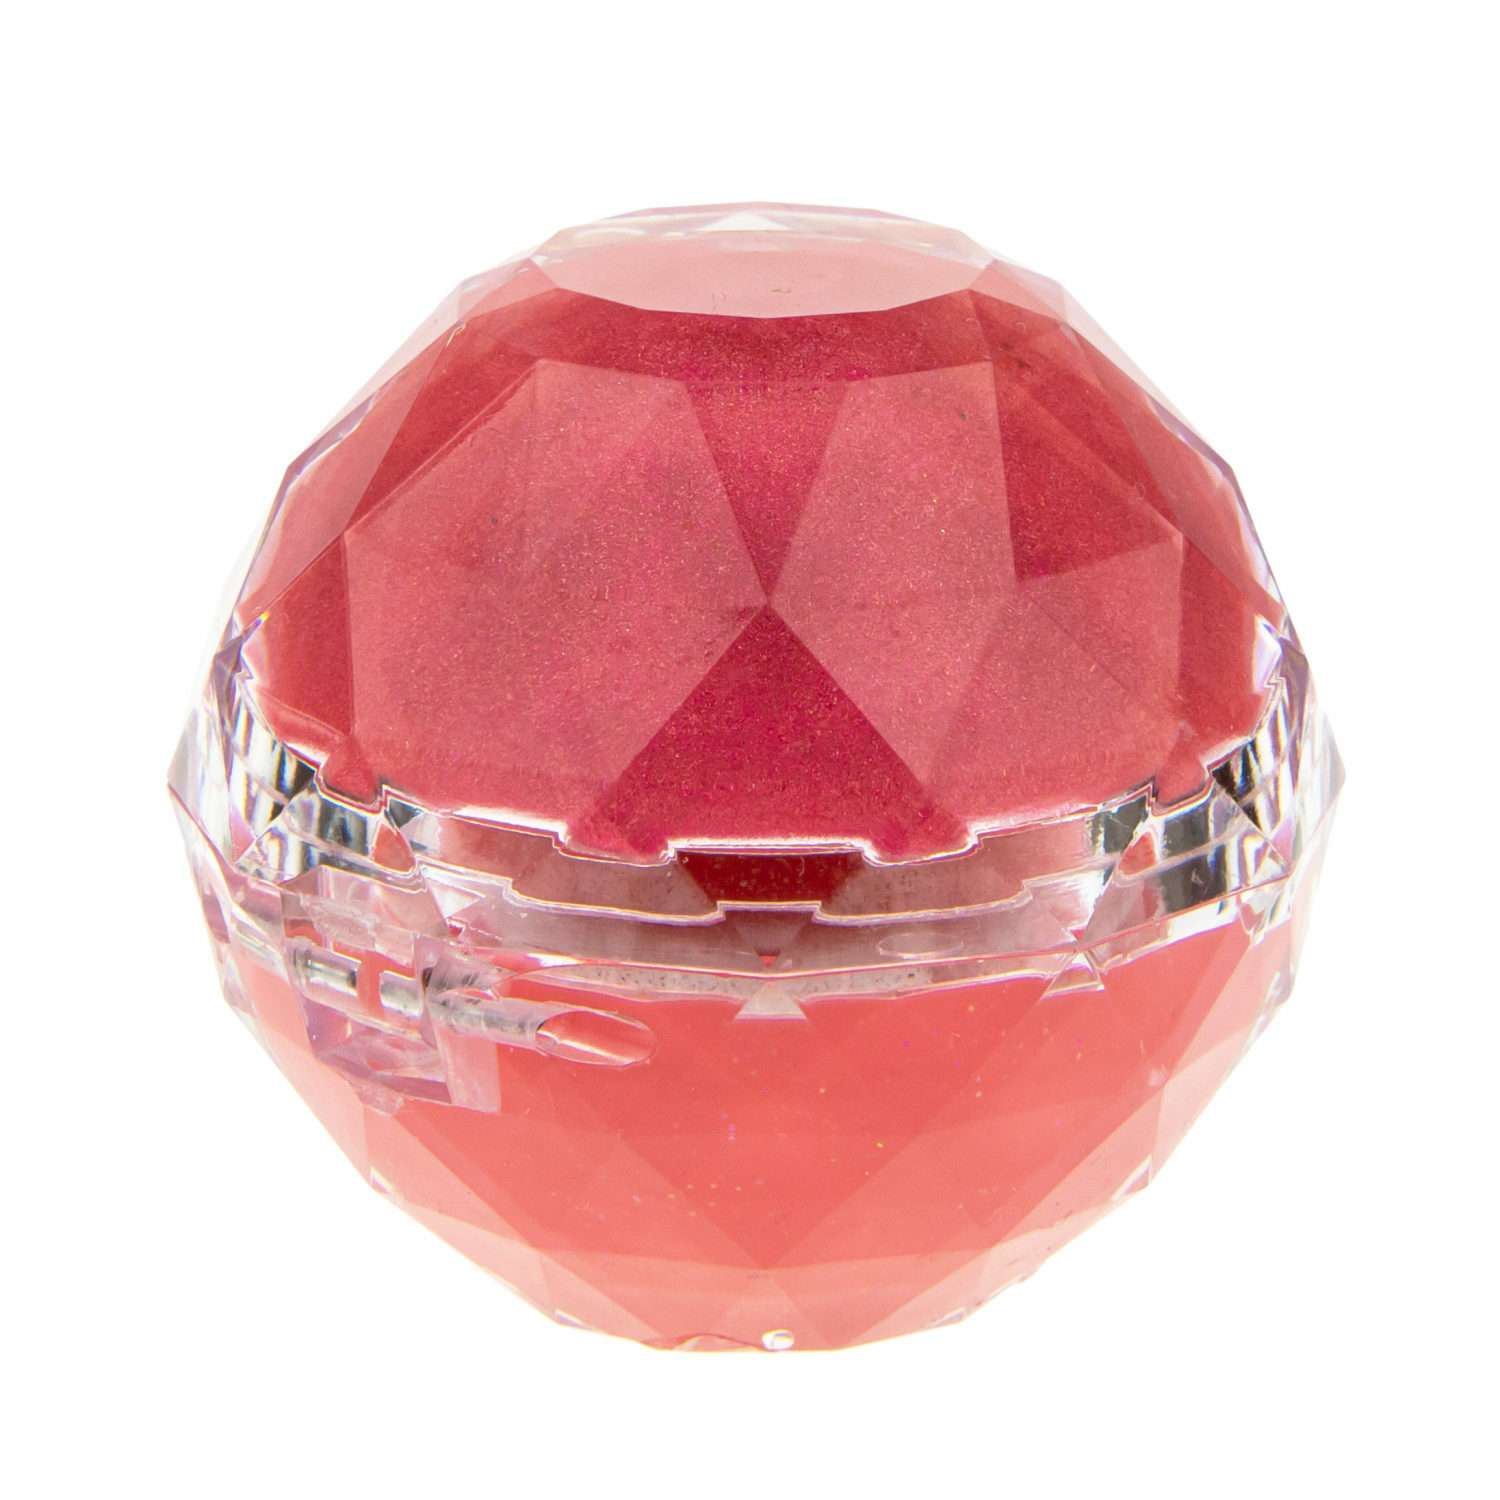 Блеск для губ Lukky Даймонд 2 в 1 цвет ярко-розовый и красно-розовый - фото 4